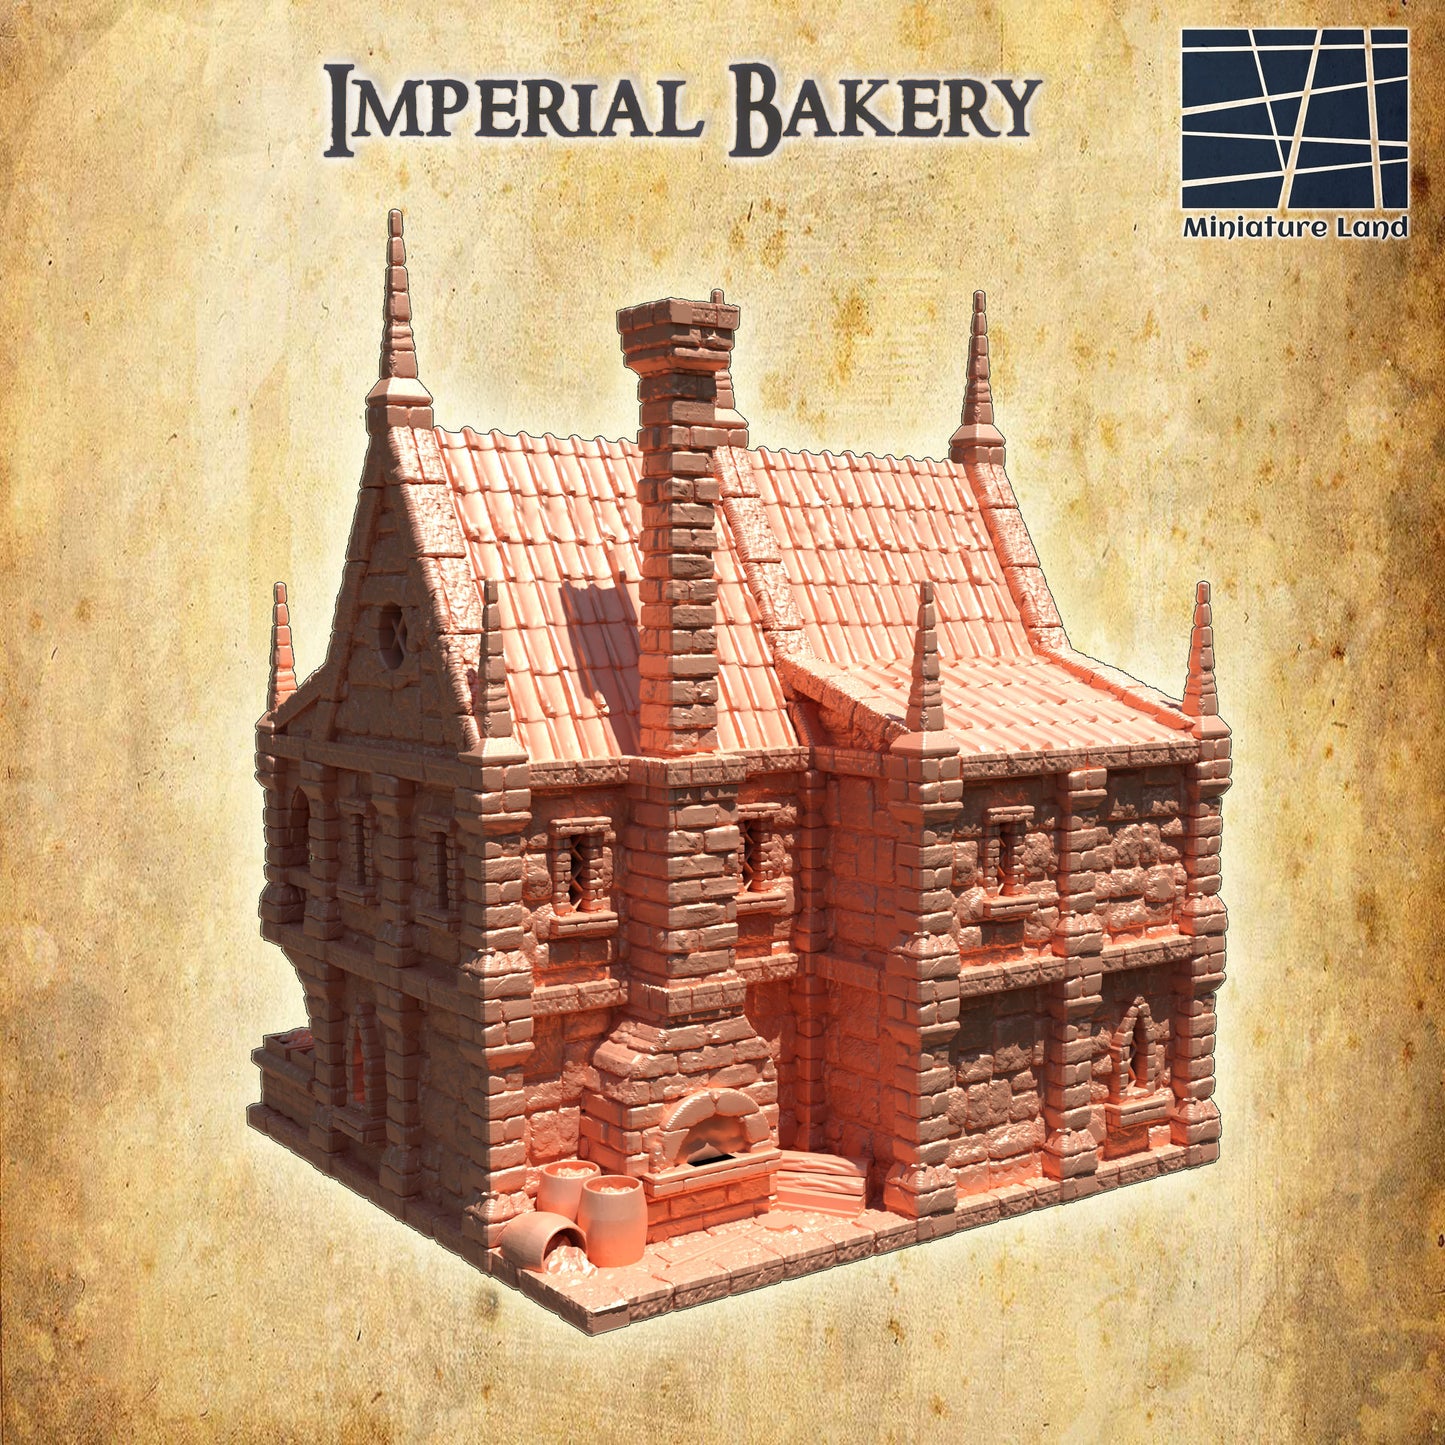 Imperial Bakery, Baker's House, Bakery